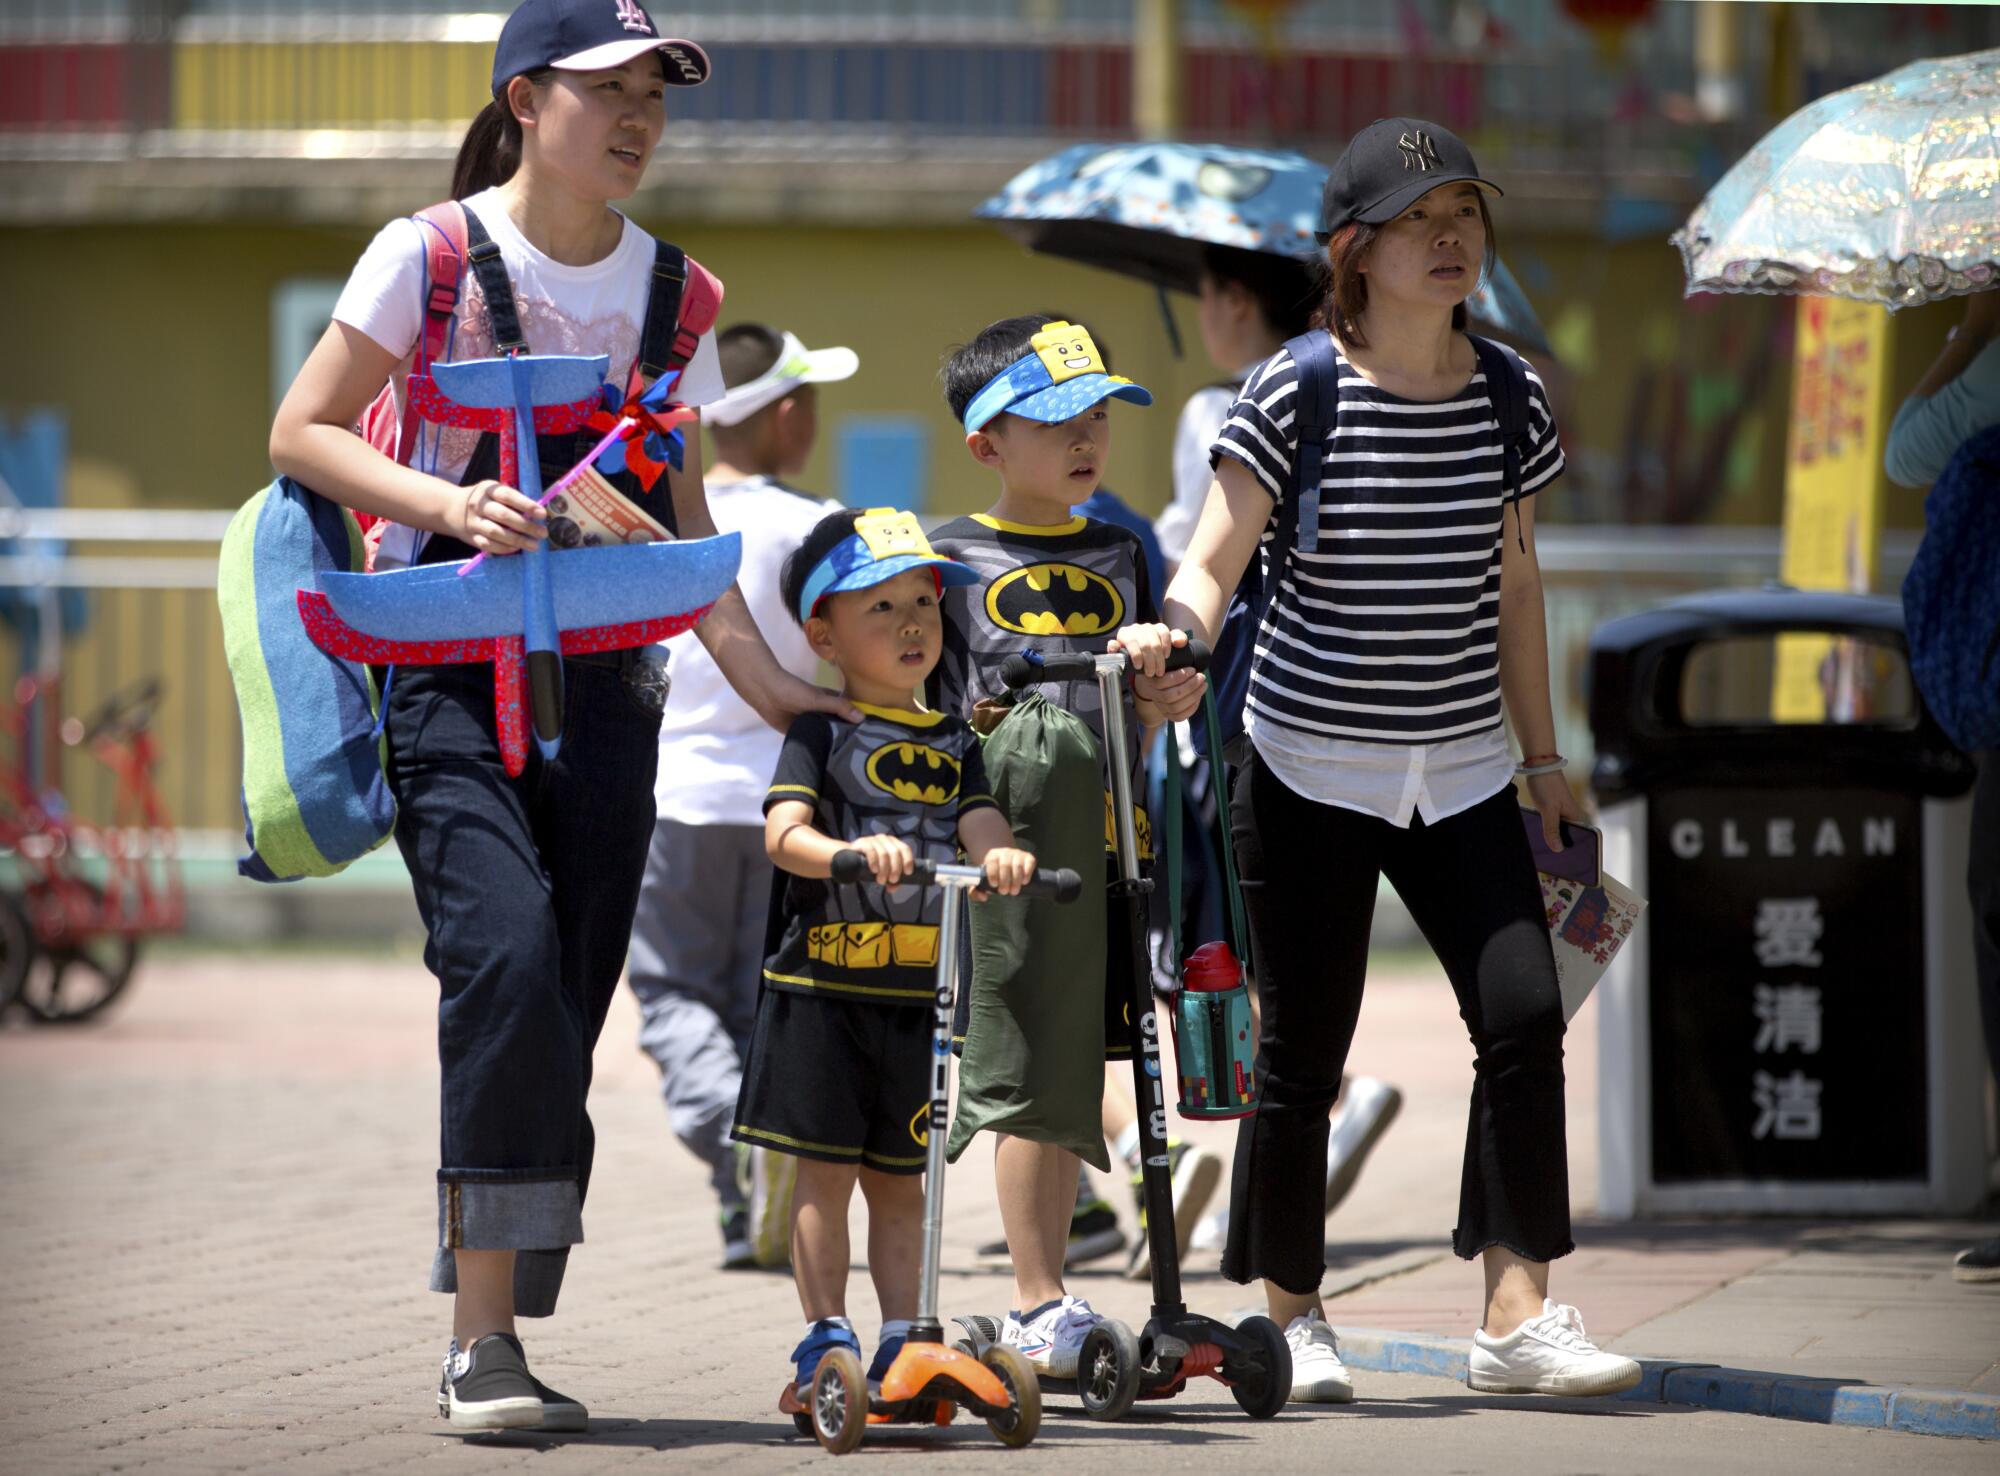 Duas mulheres, uma delas carregando brinquedos, caminham com crianças em roupas combinando e em patinetes em um parque público 